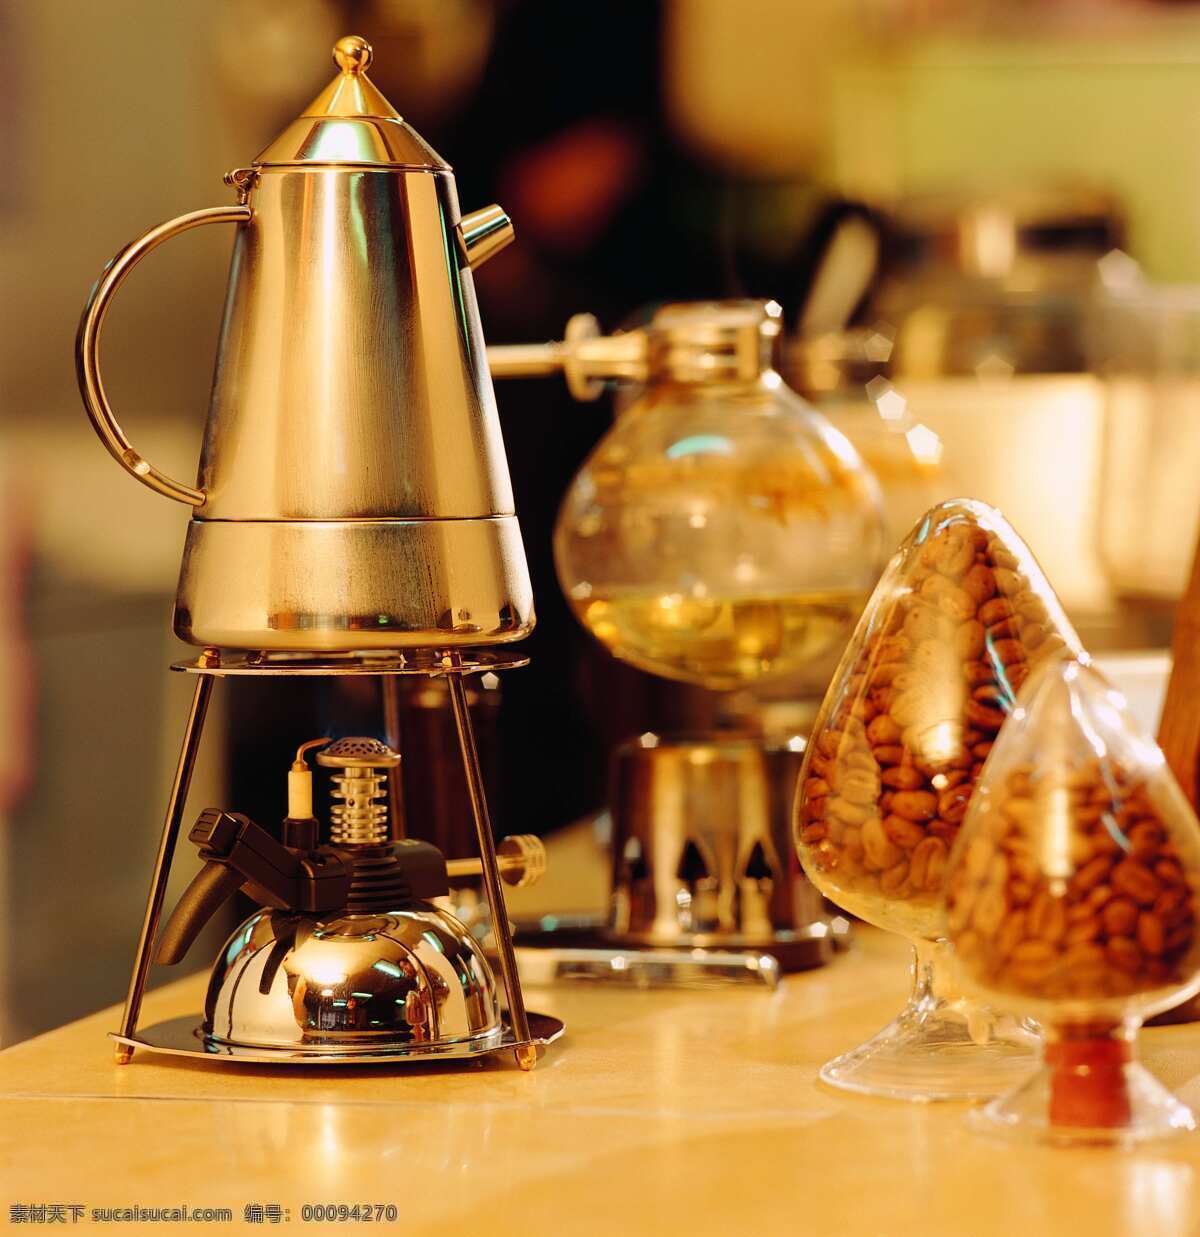 煮 咖啡 过程 高档 可可 制作方法 煮咖啡 玻璃器皿 里 咖啡豆 熟 风景 生活 旅游餐饮